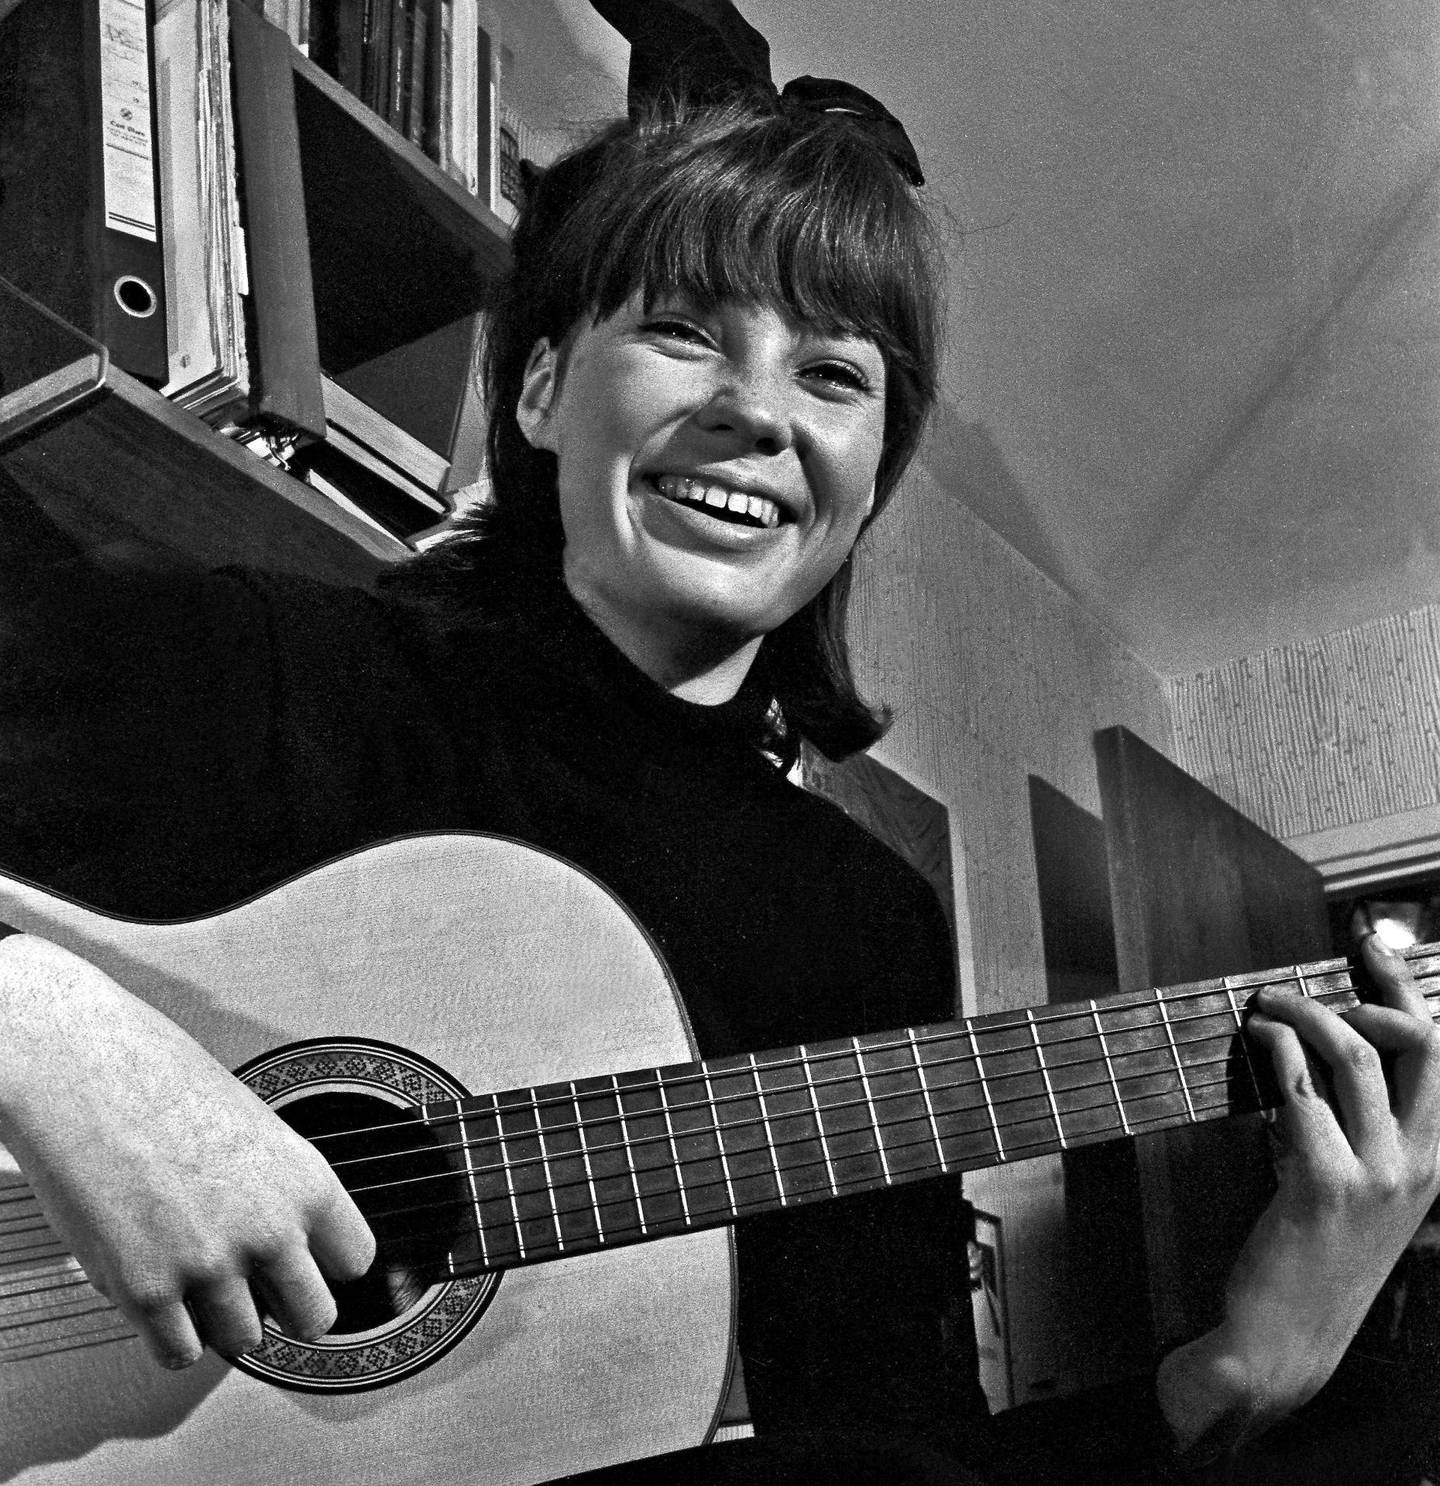 Åse Kleveland da hun platedebuterte med en sang av Bob Dylan i 1965. Nå kommer omsider den norske versjonen av samme sang.Foto: NTB scanpix